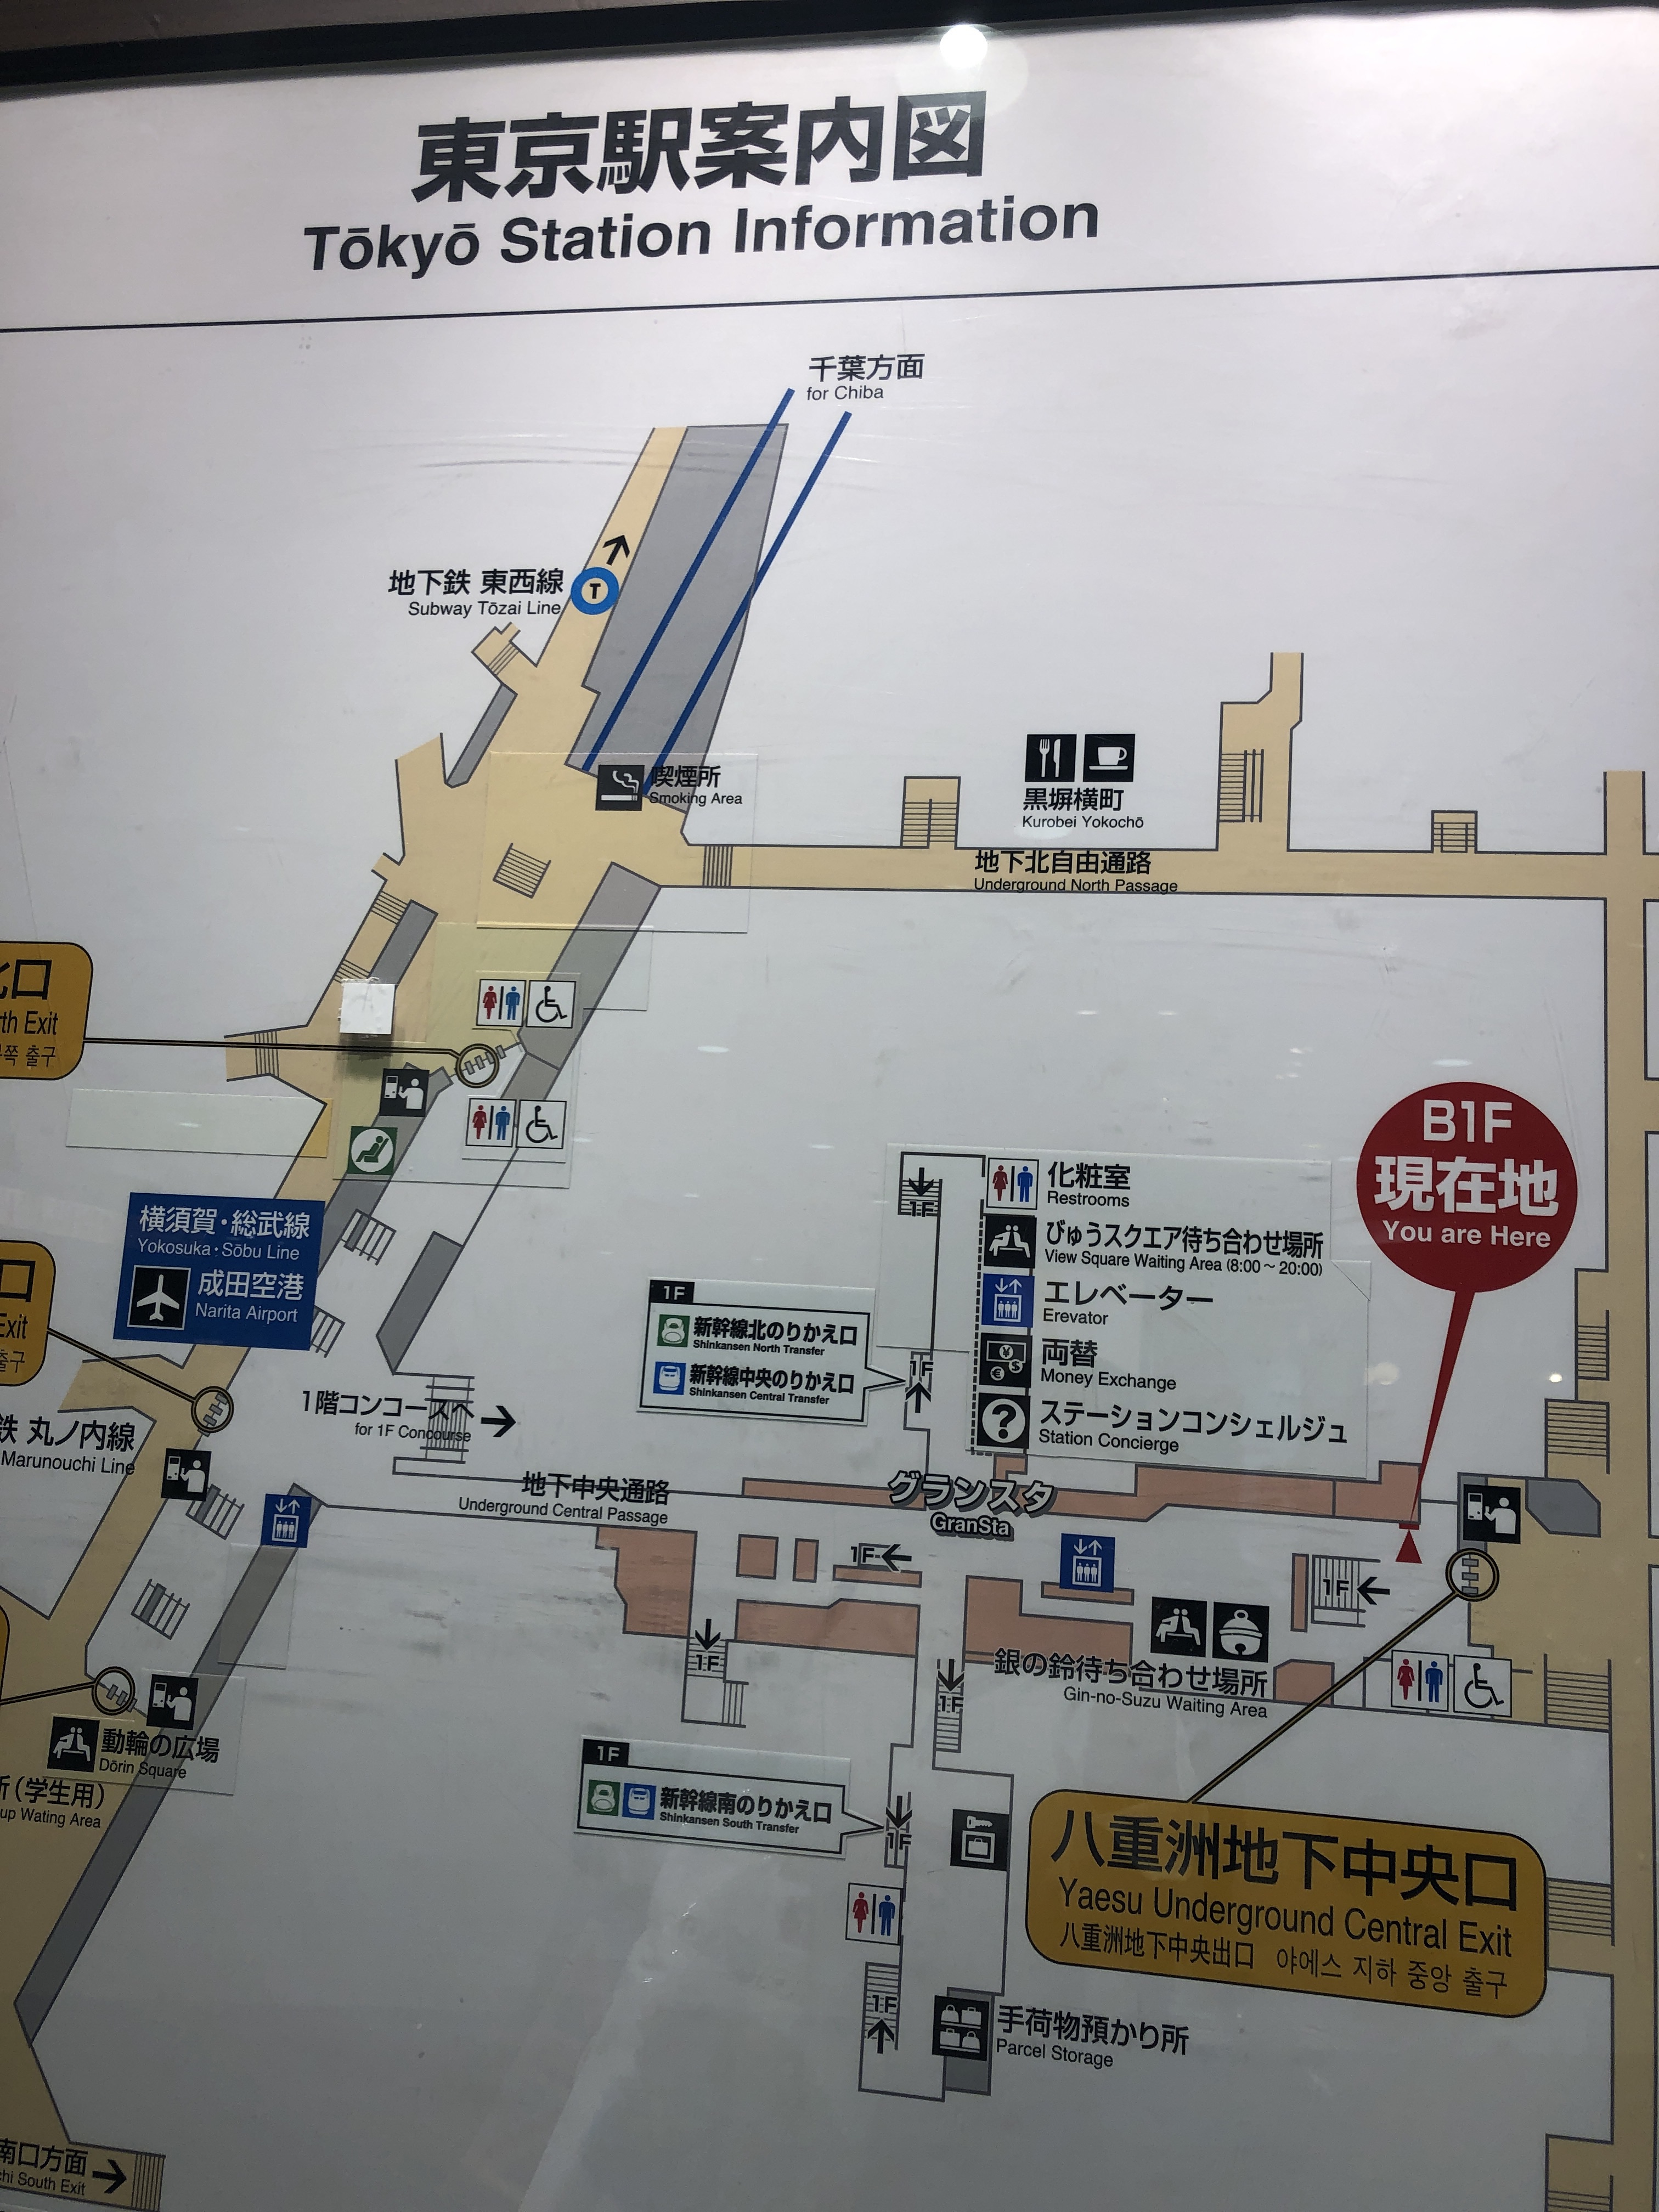 東京キャラクターストリートでトミカとプラレール 東京駅一番街 1 5人目育児 我が家の双子